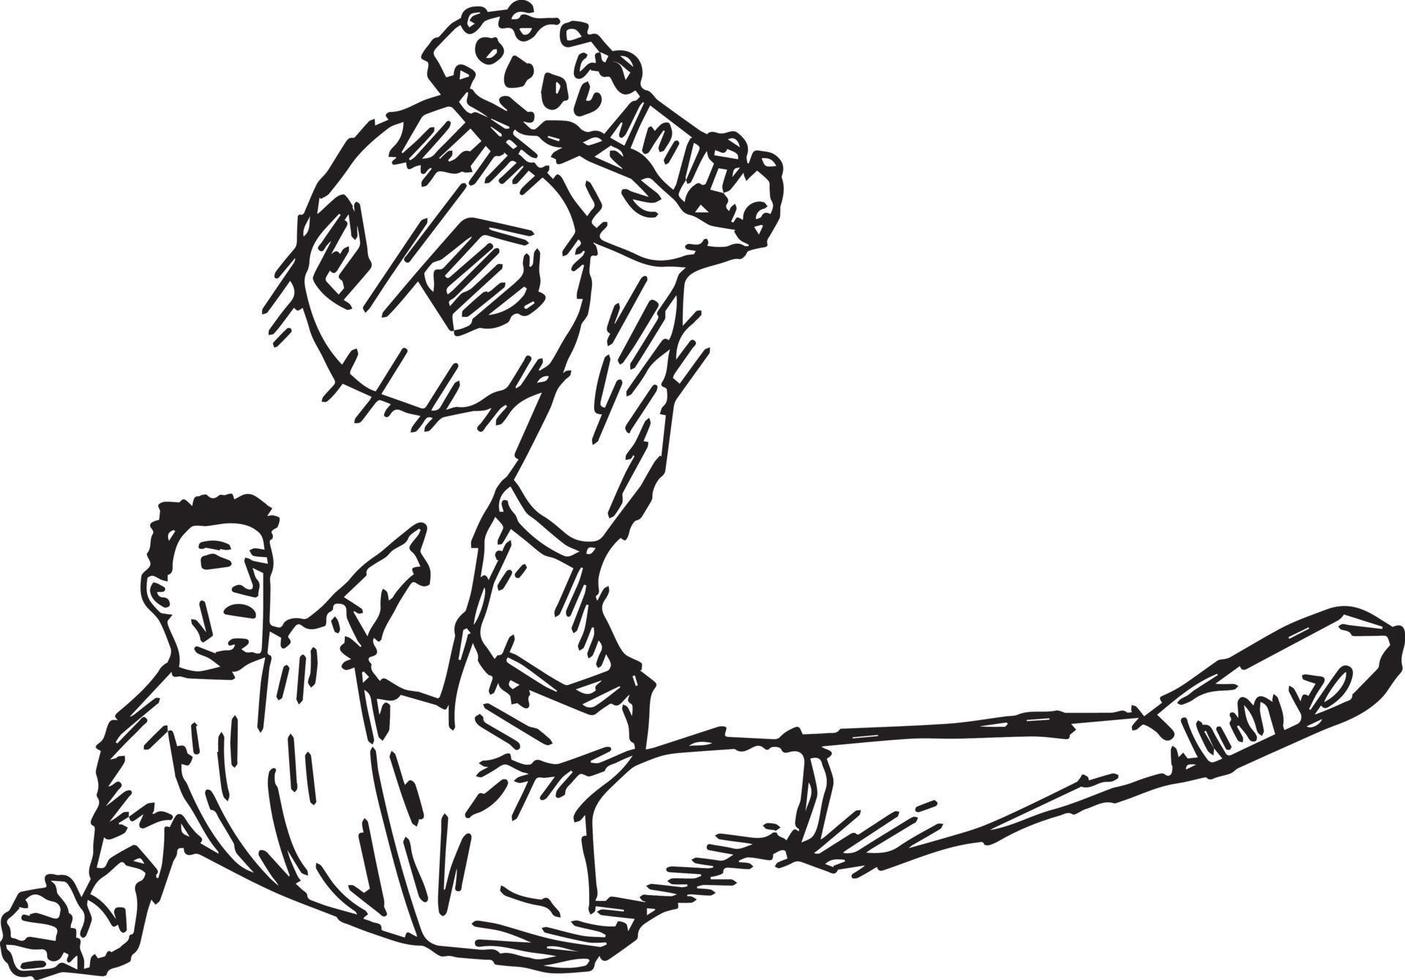 voetbal volley kick - vector illustratie schets hand getrokken